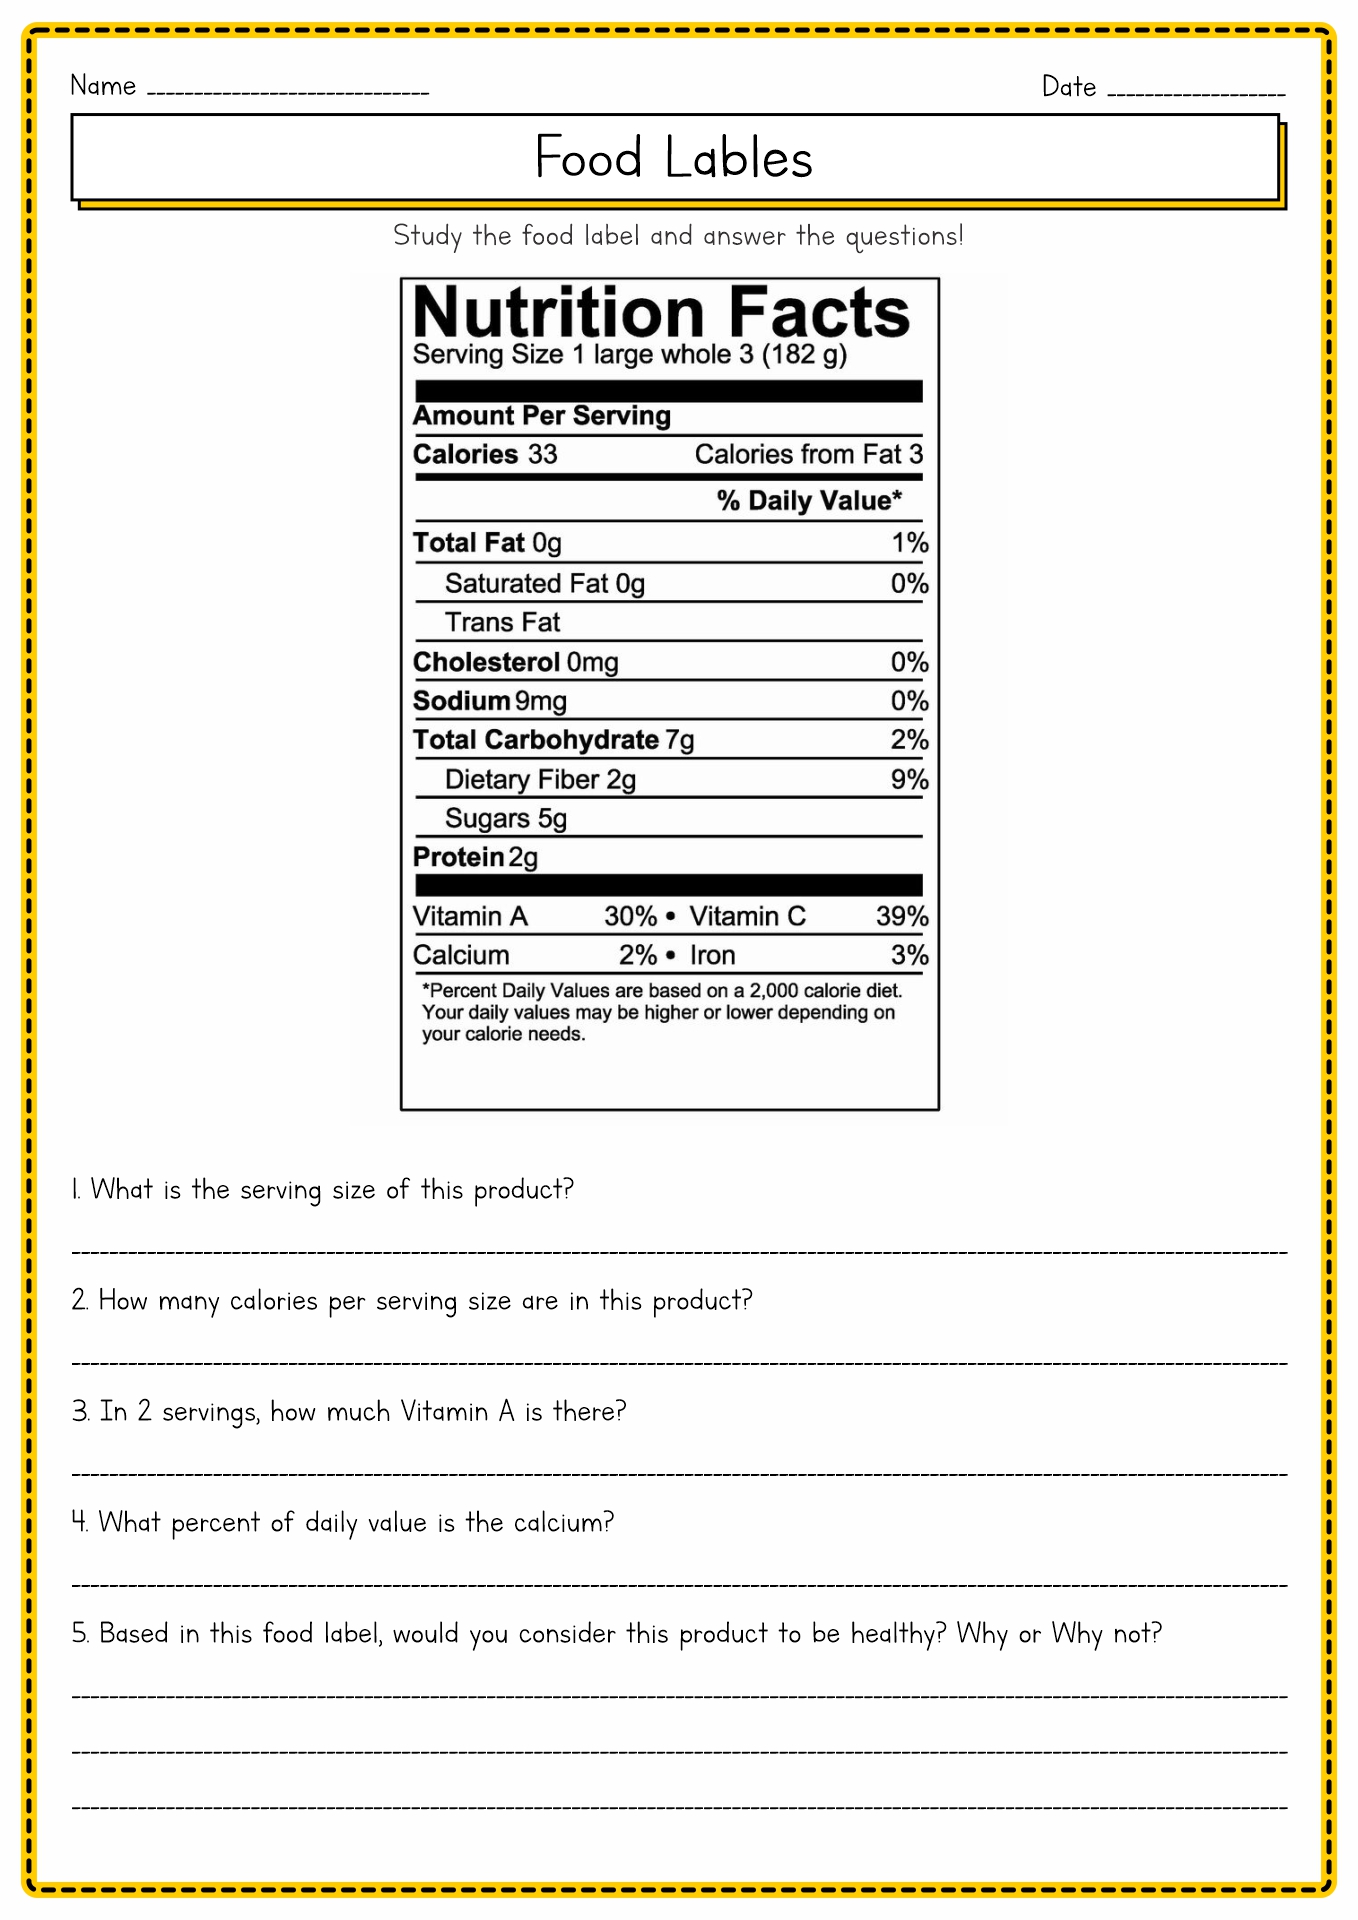 Food Label Worksheet Image